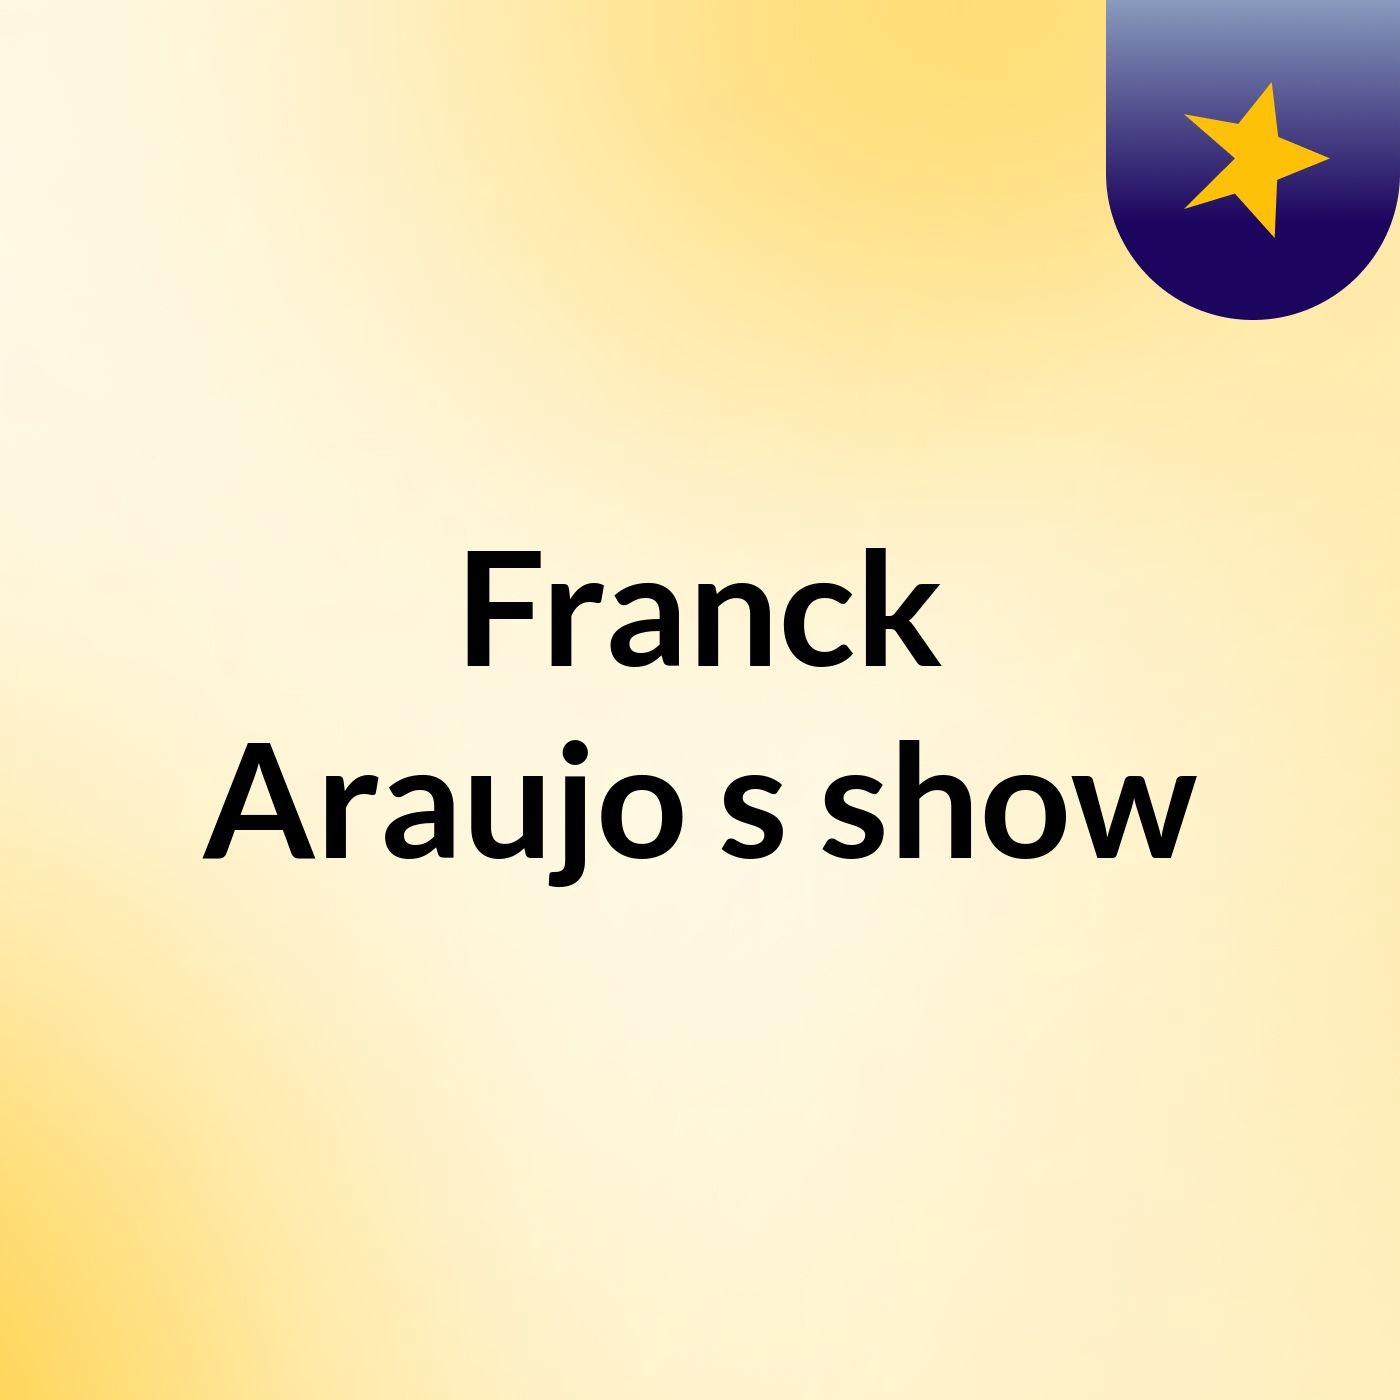 Franck Araujo's show